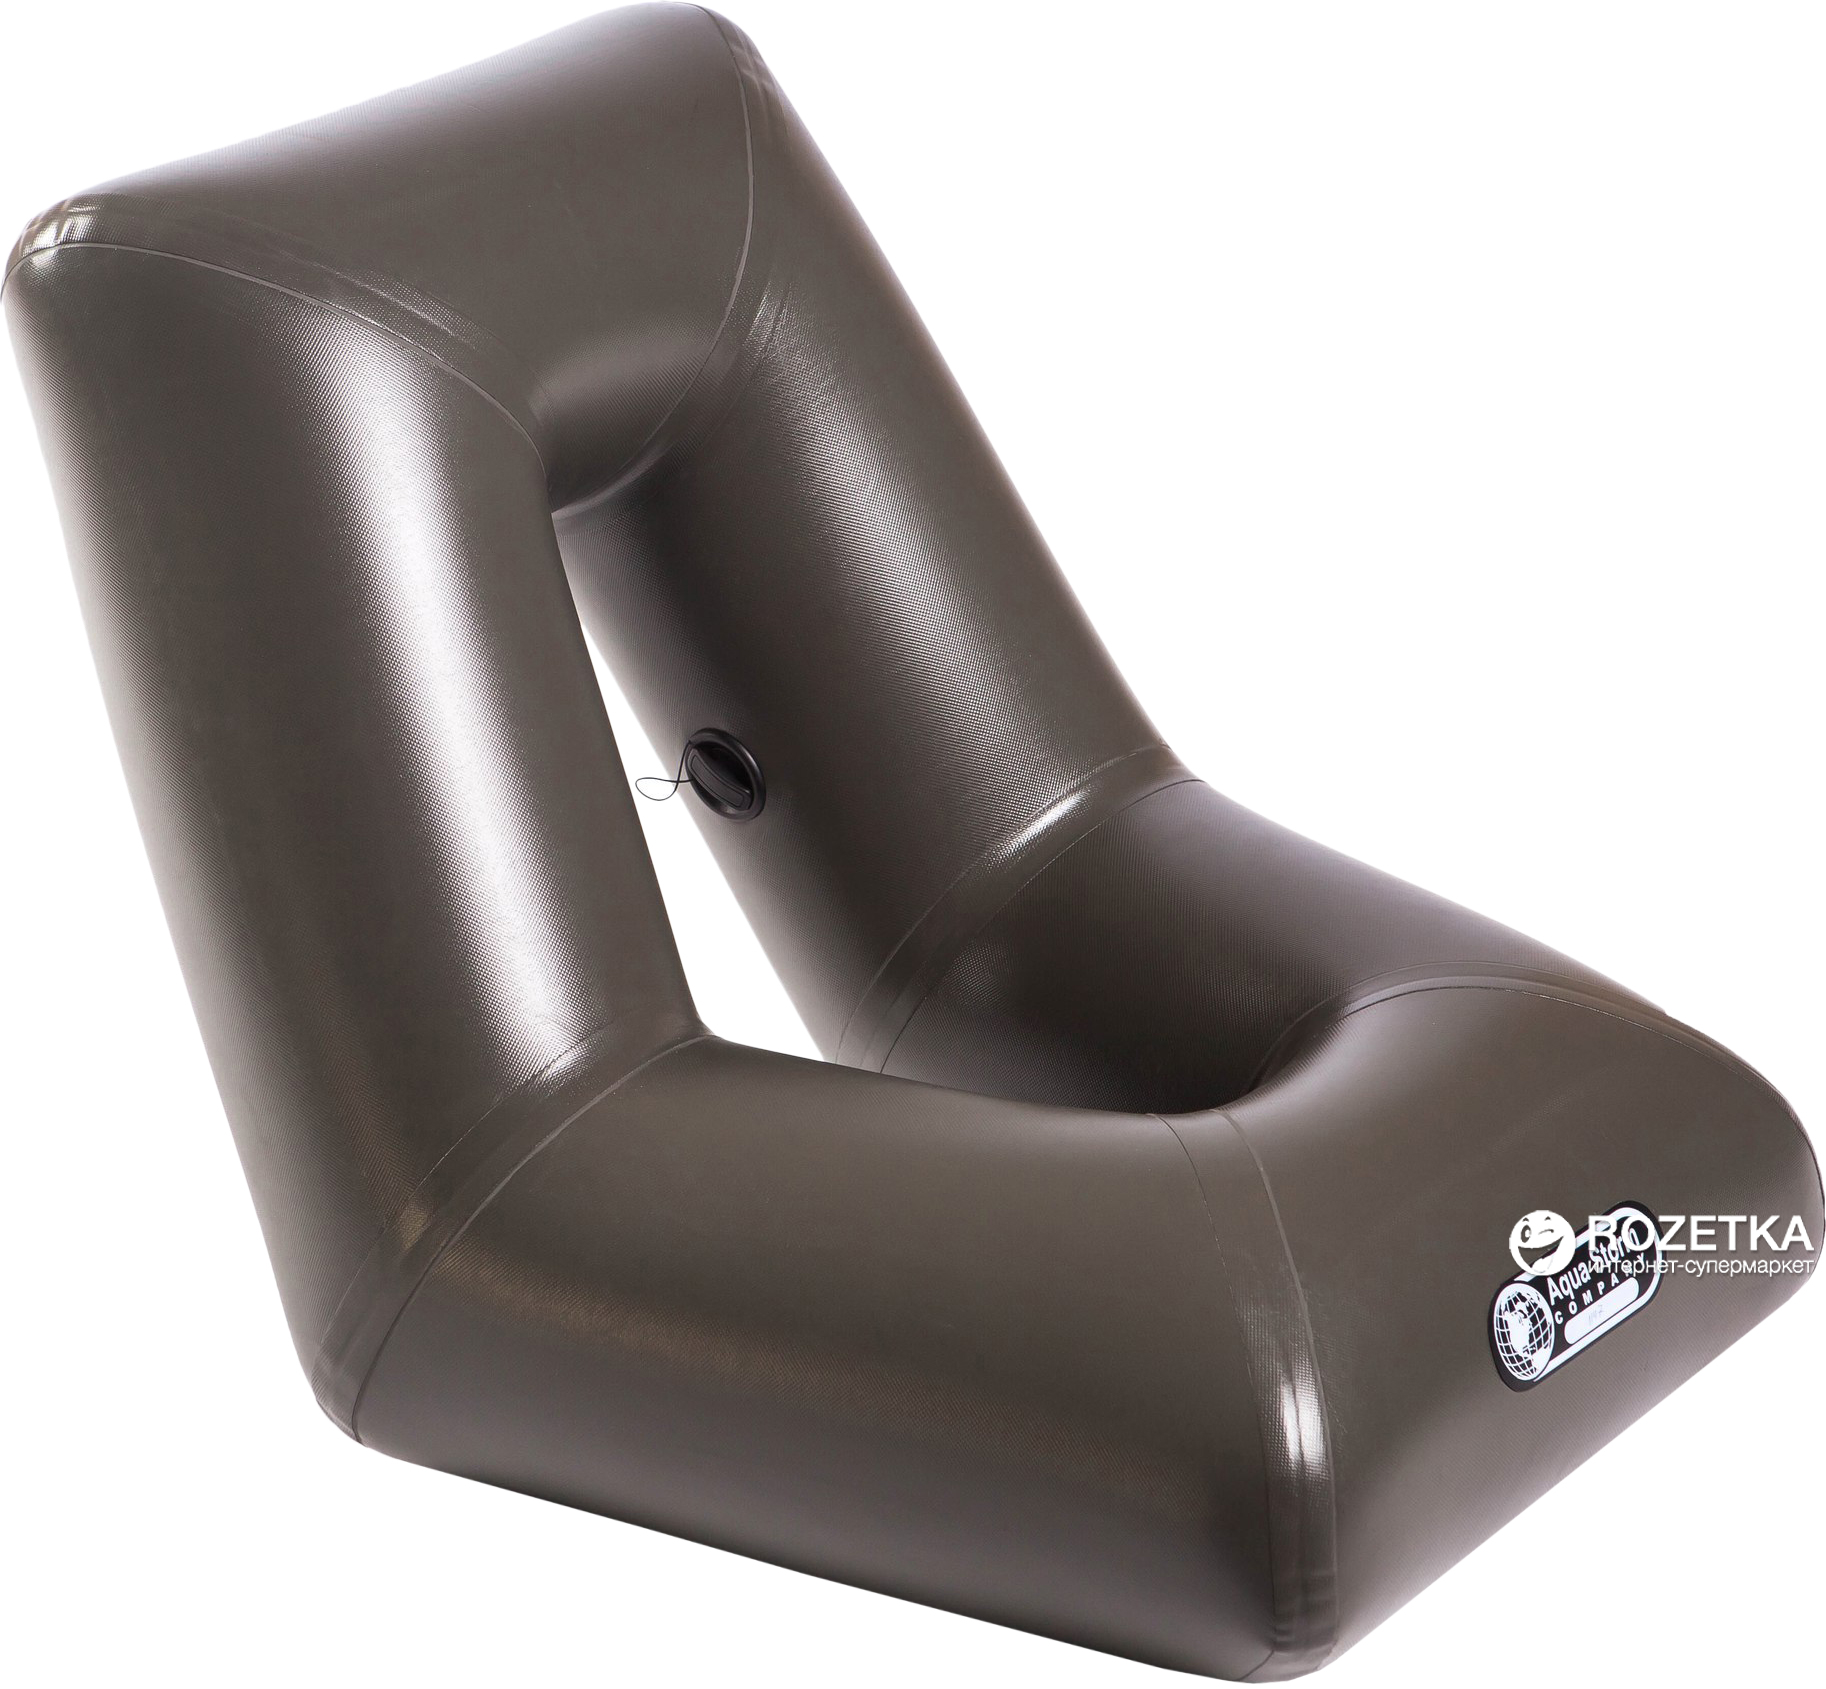 Сиденье надувное пвх. Надувное кресло UREX 2. Надувное универсальное сиденье «комфорт-ТТ». Поворотное кресло для лодки n19-c125-01. Кресло надувное ПВХ UREX.